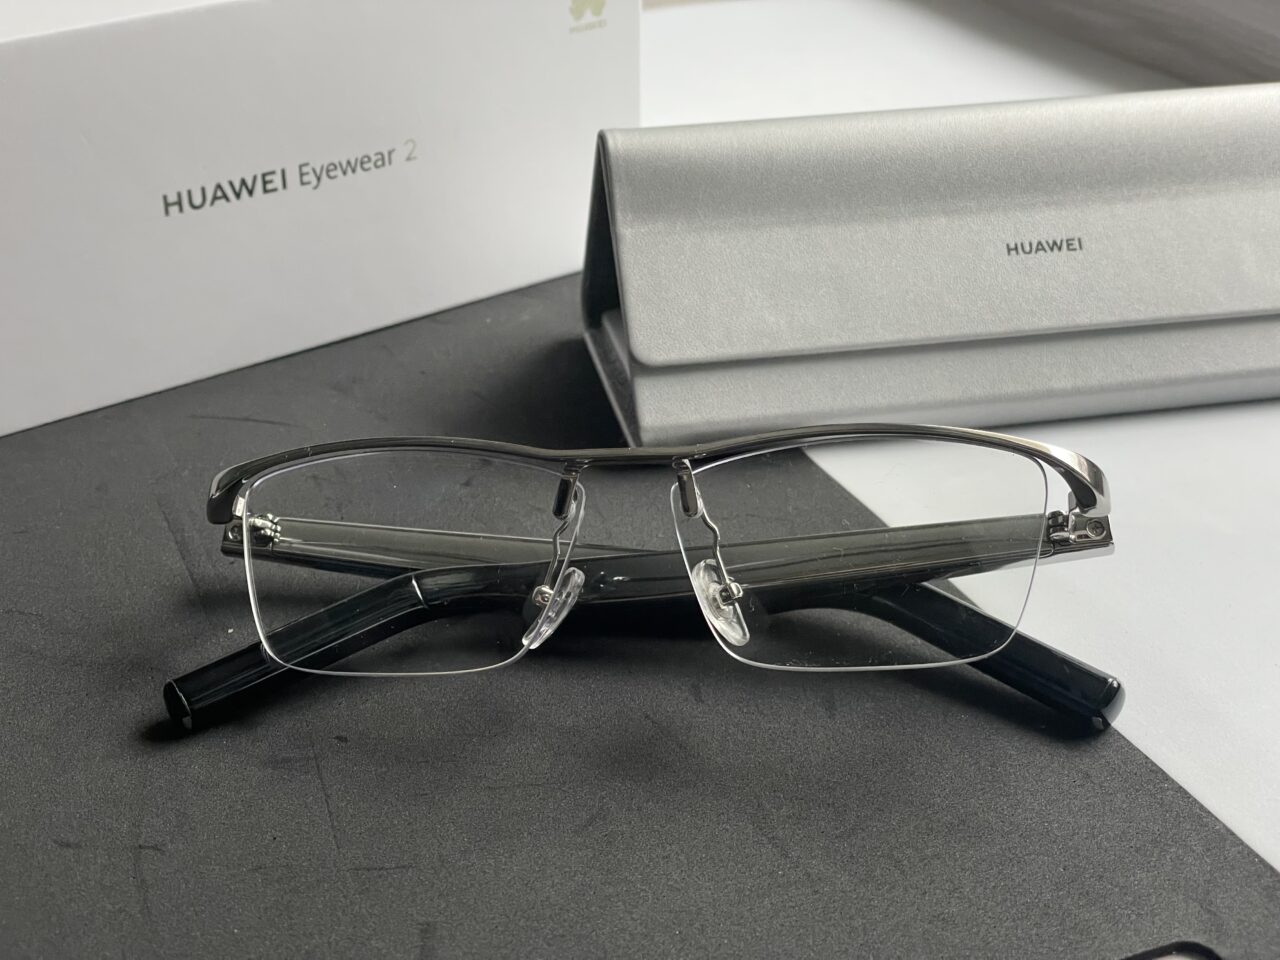 Okulary HUAWEI Eyewear 2 bez oprawek leżą na czarnym podłożu przed otwartym srebrnym etui i białym pudełkiem z logo HUAWEI.